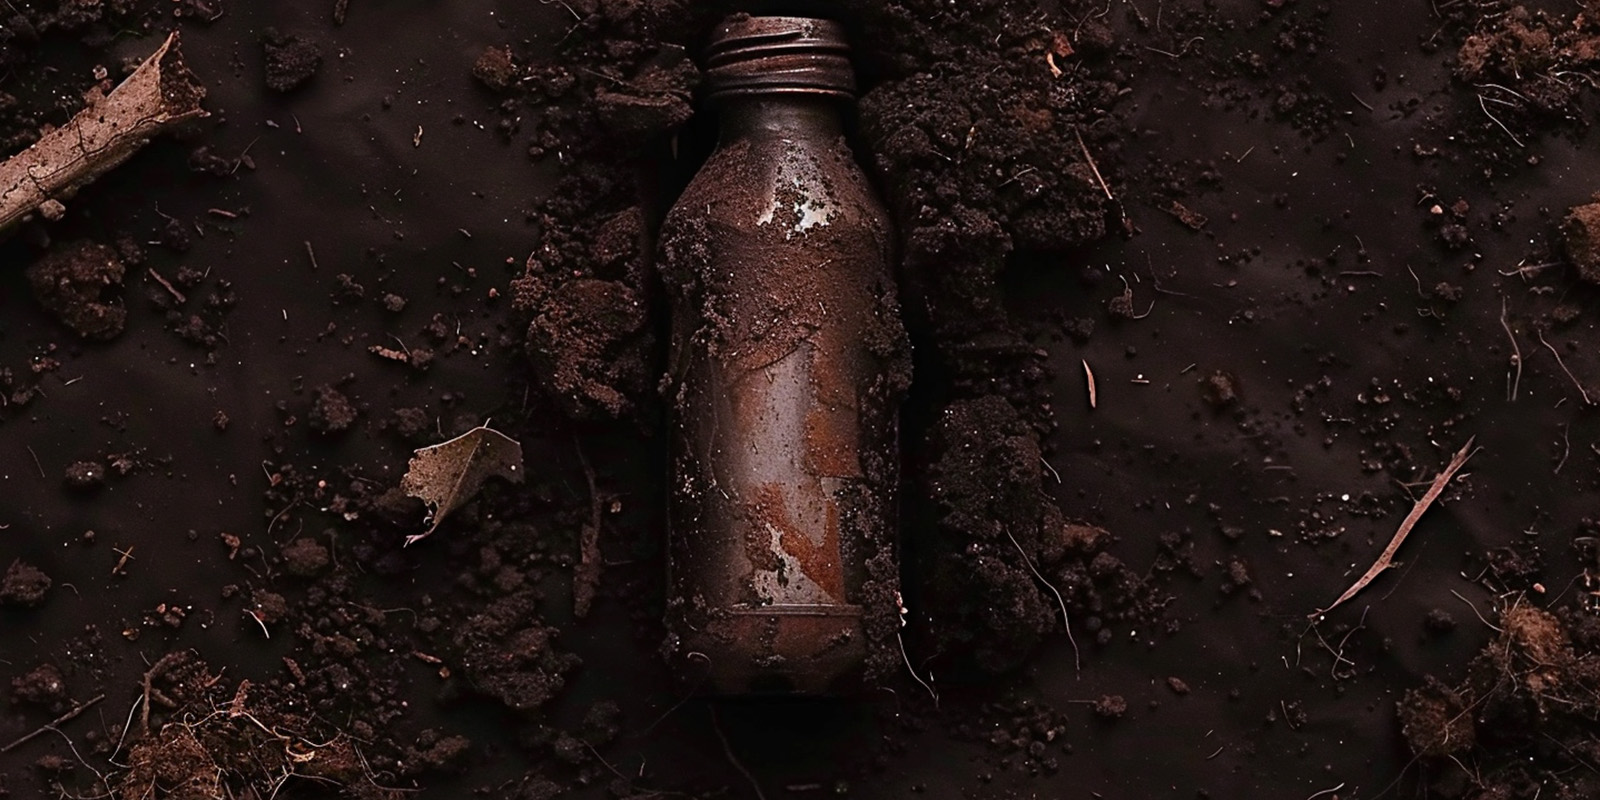 Una botella de plástico biodegradable depositada en la tierra que muestra una descomposición avanzada.